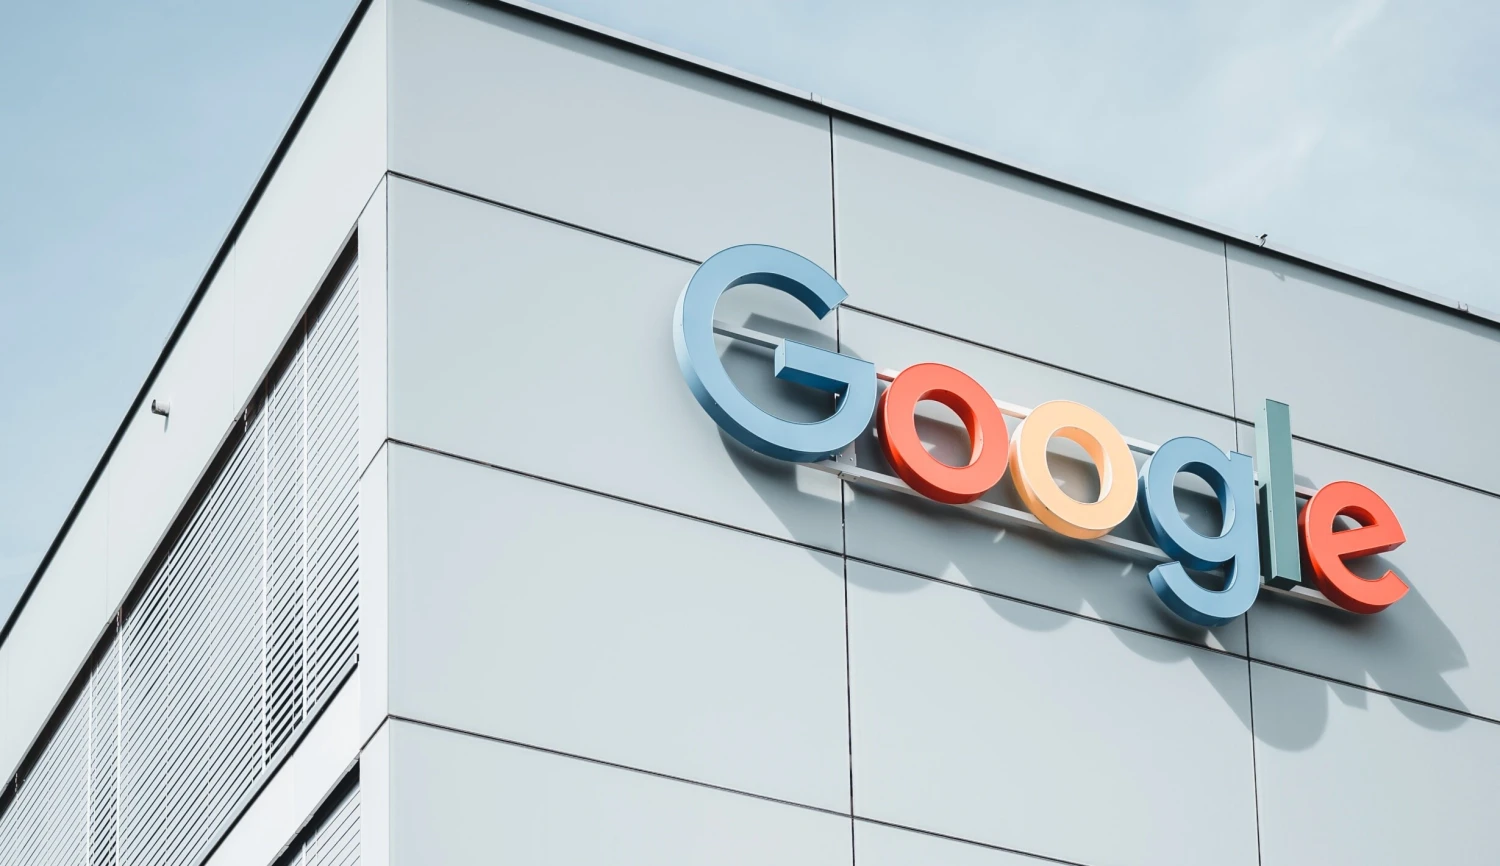 Google čeká rekordní pokuta 2,42 miliardy eur, soud by to měl potvrdit